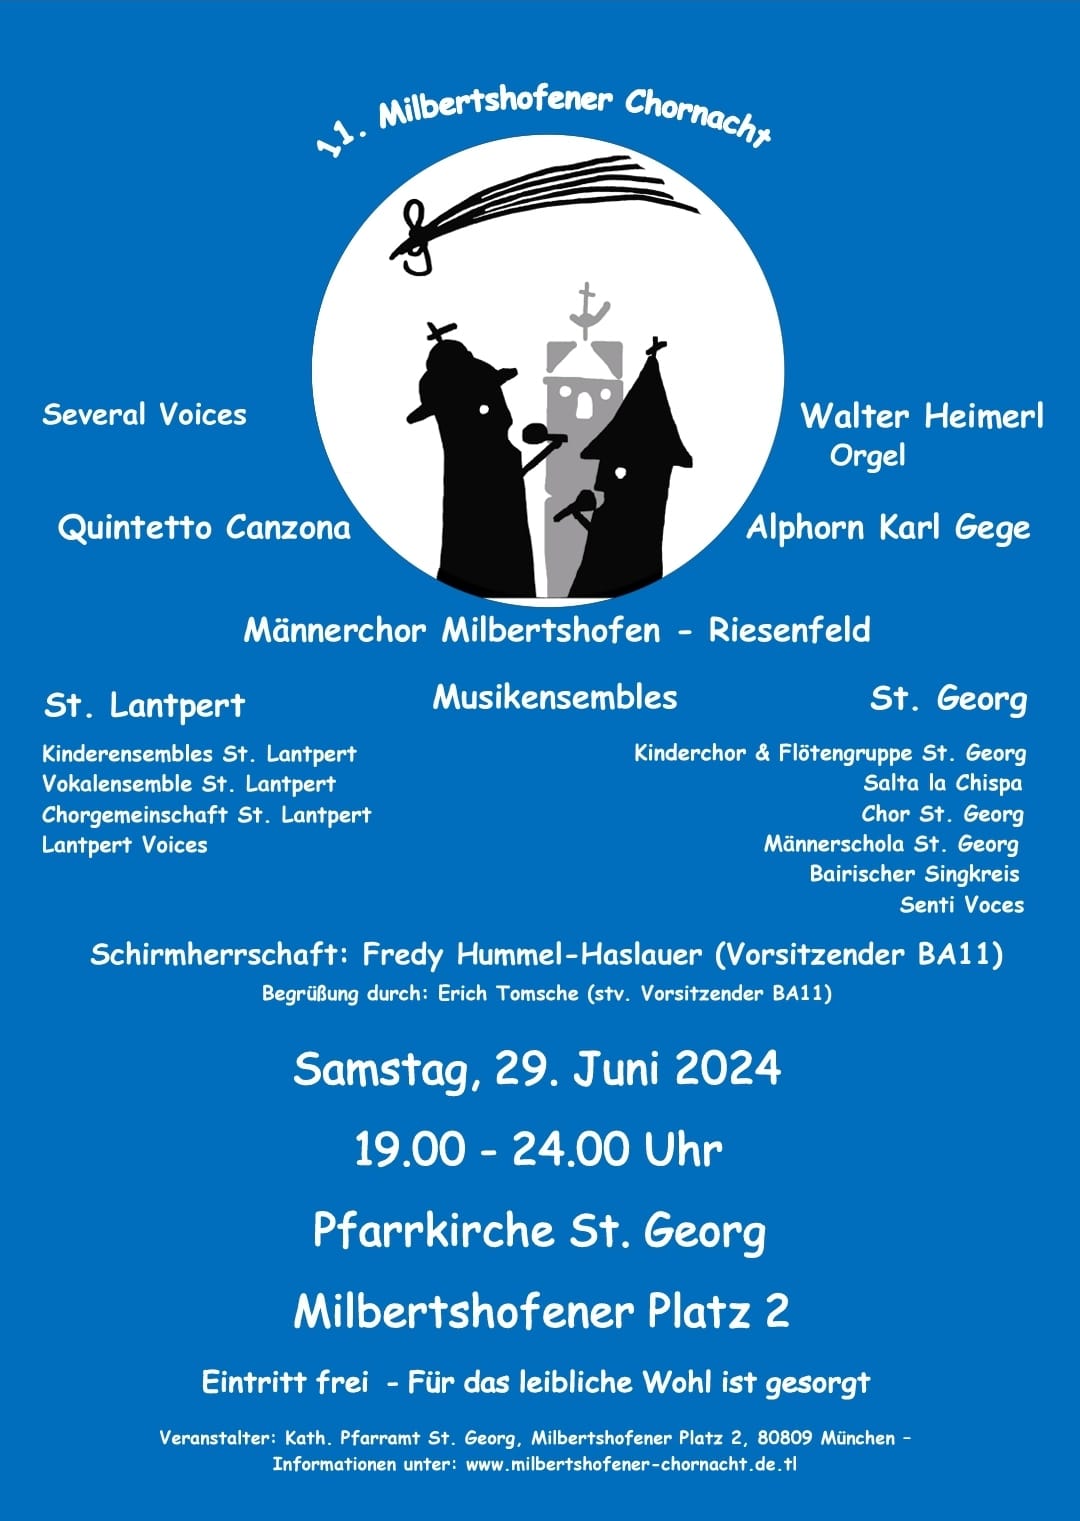 Plakat der 11. Milbertshofener Chornacht (St. Georg)